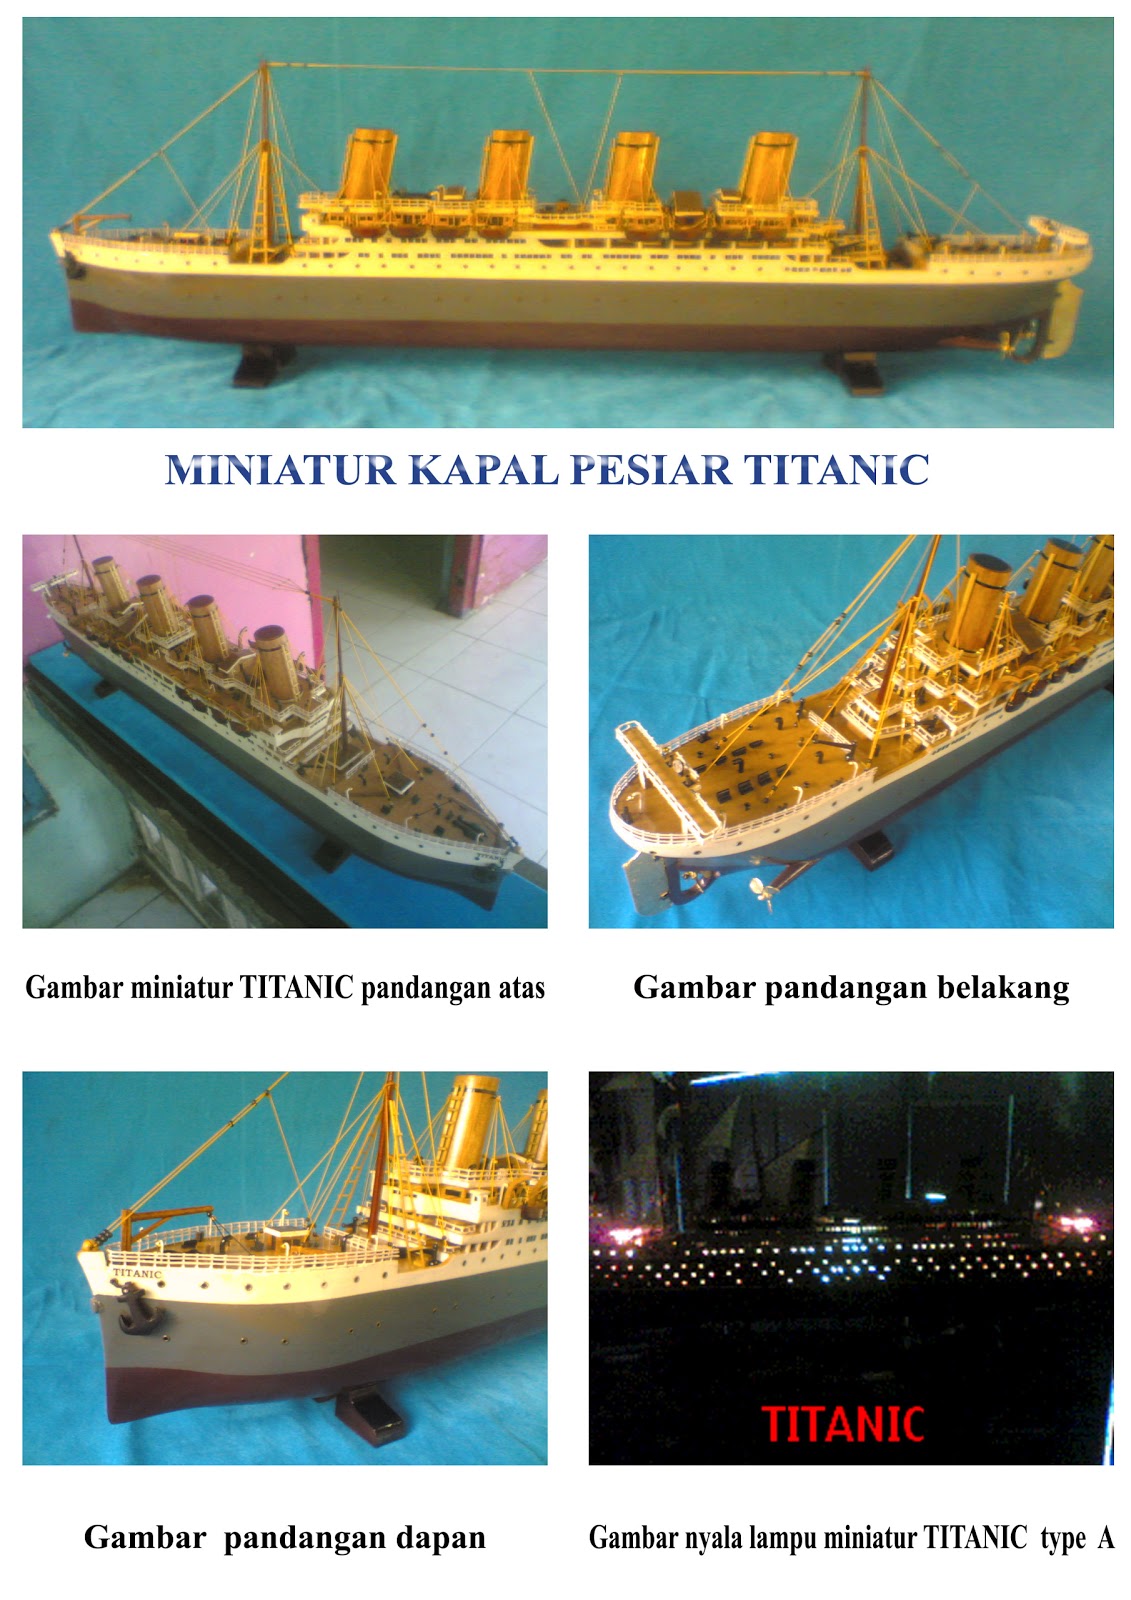 Miniatur Kapal Kerajinan Tangan Kapal Titanic 